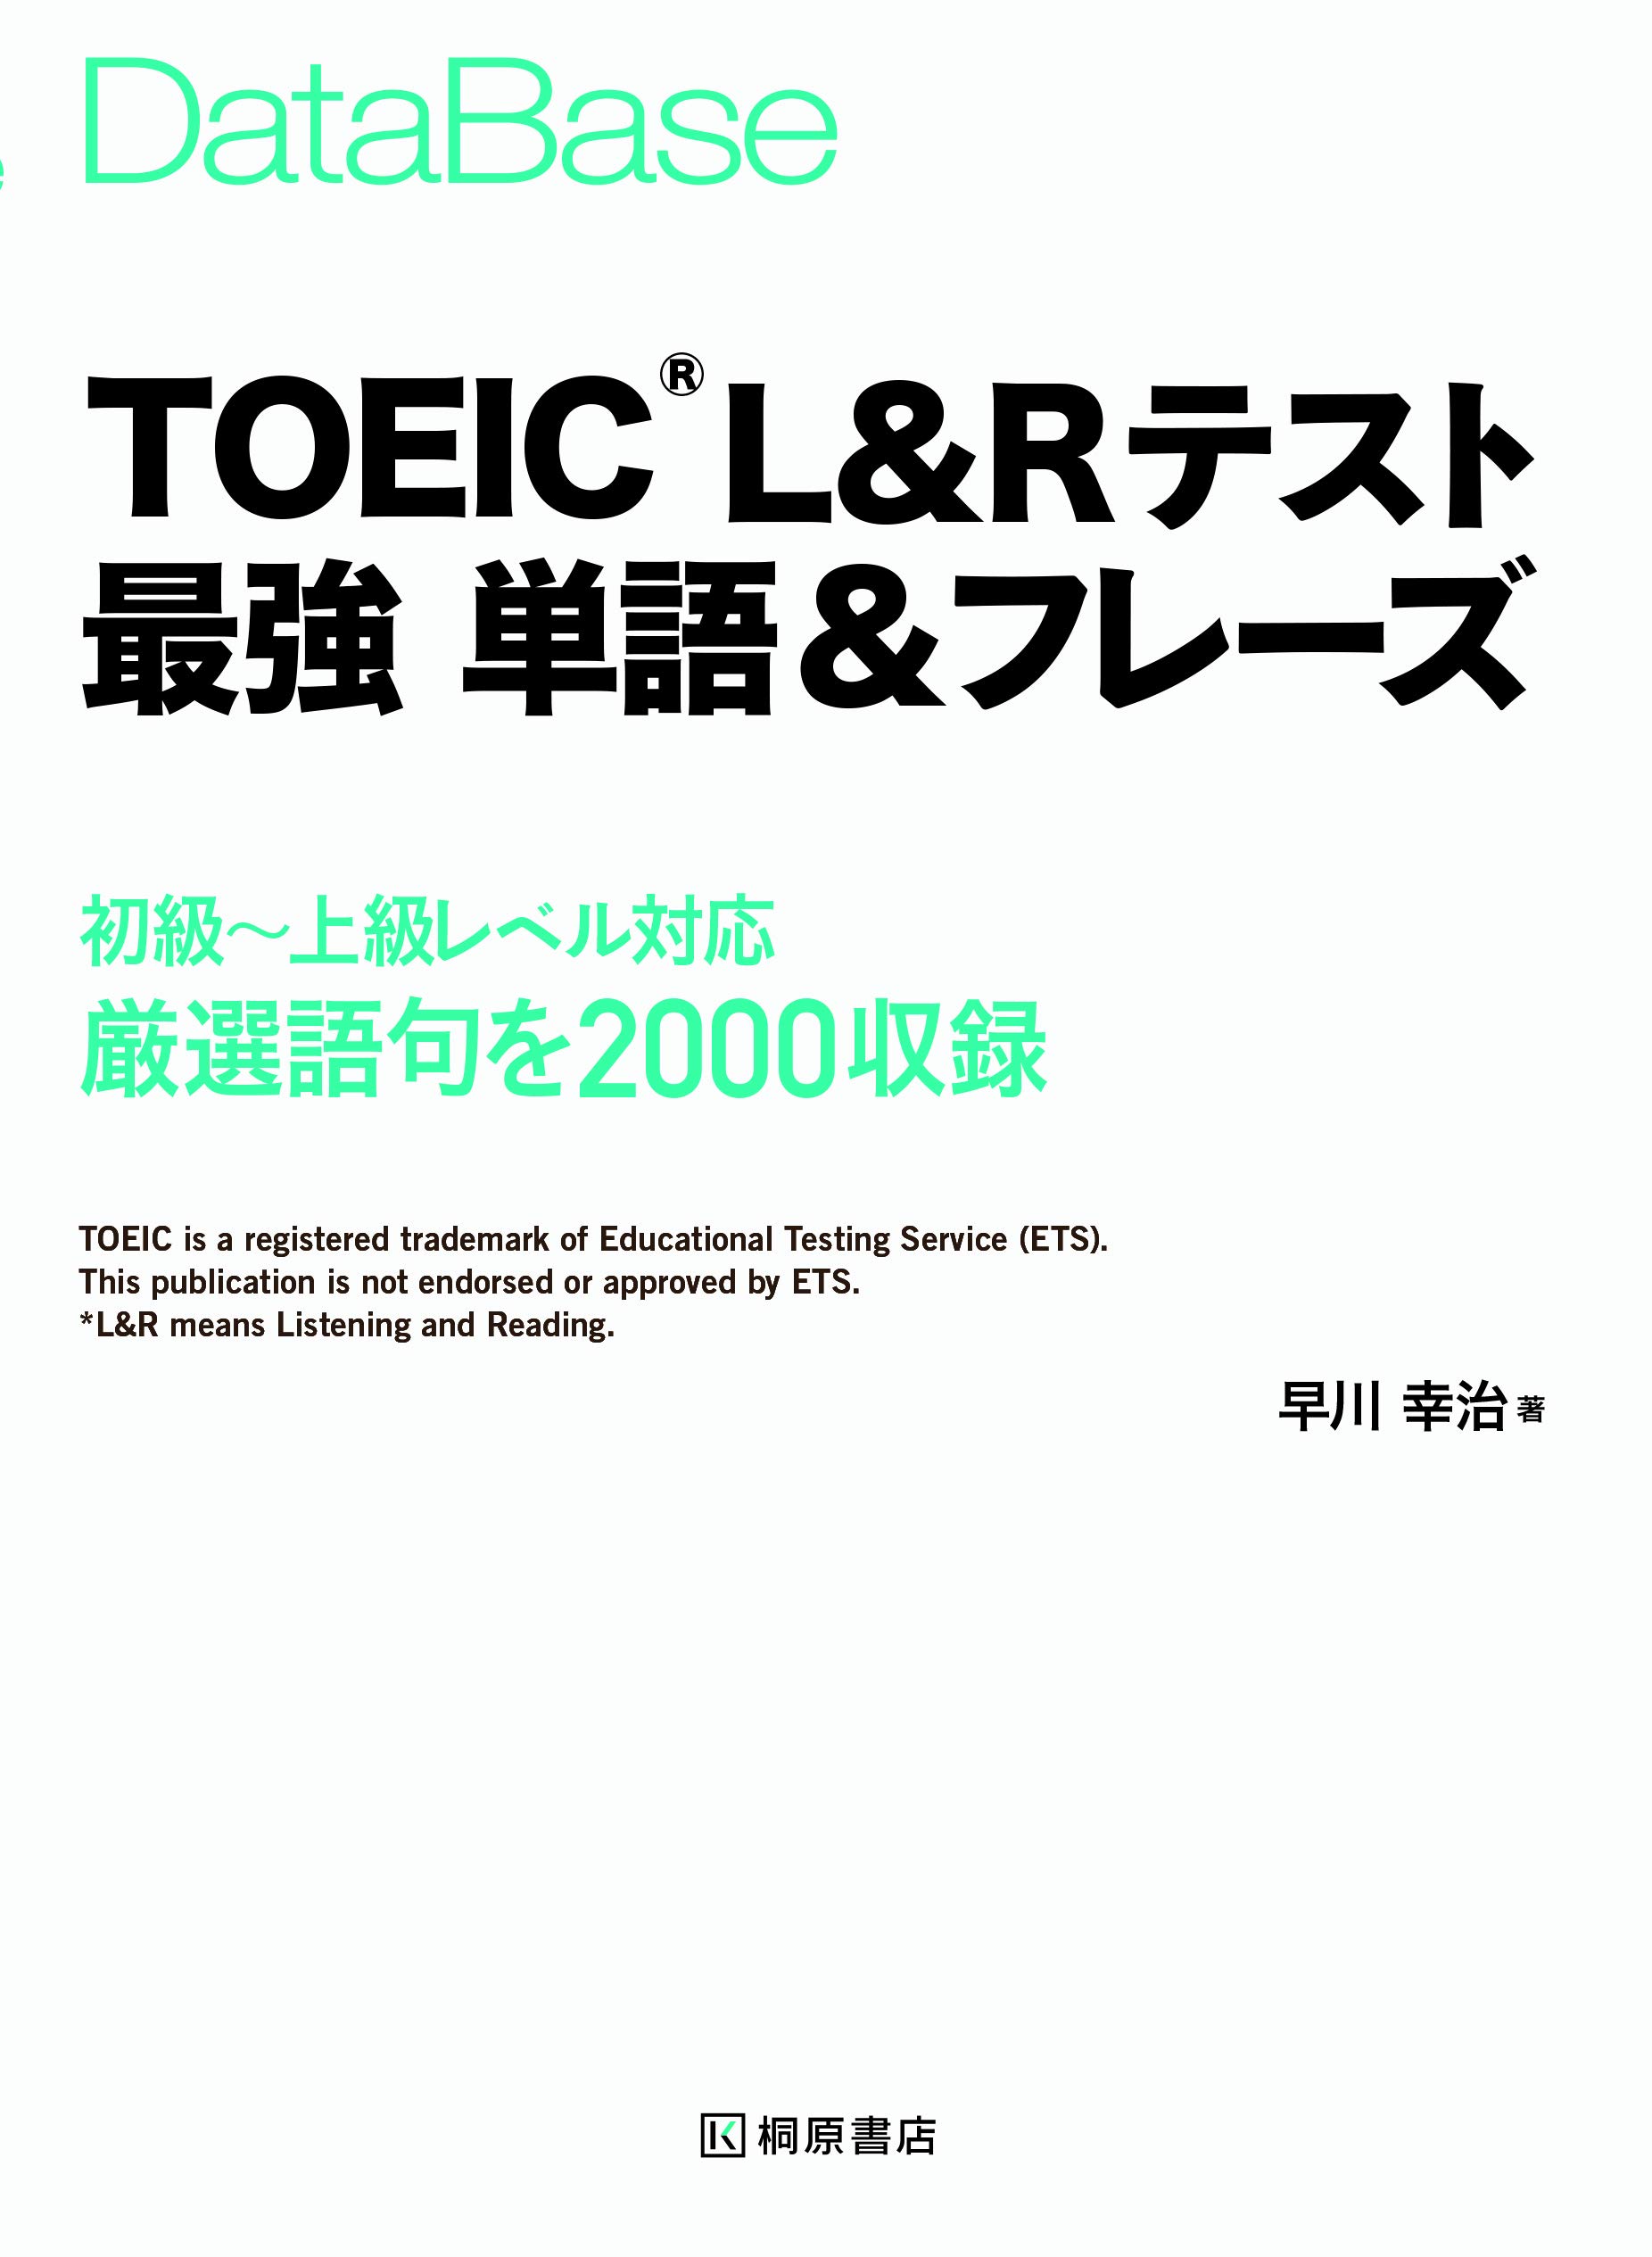 TOEIC®L&Rテスト最強 単語&フレーズ